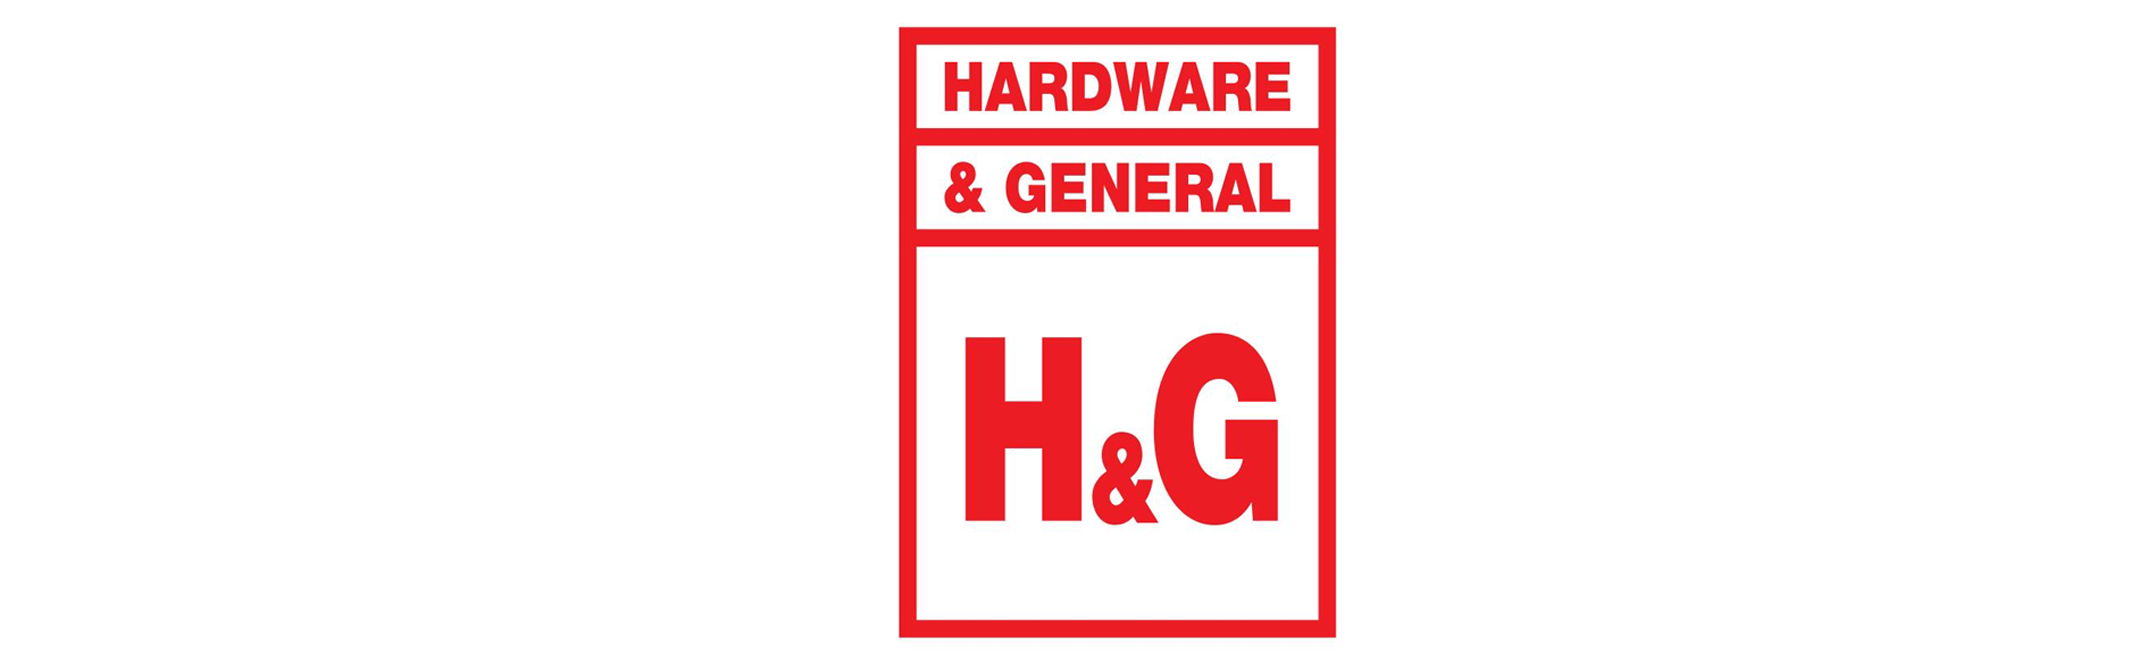 HandG logo stockist banner 1